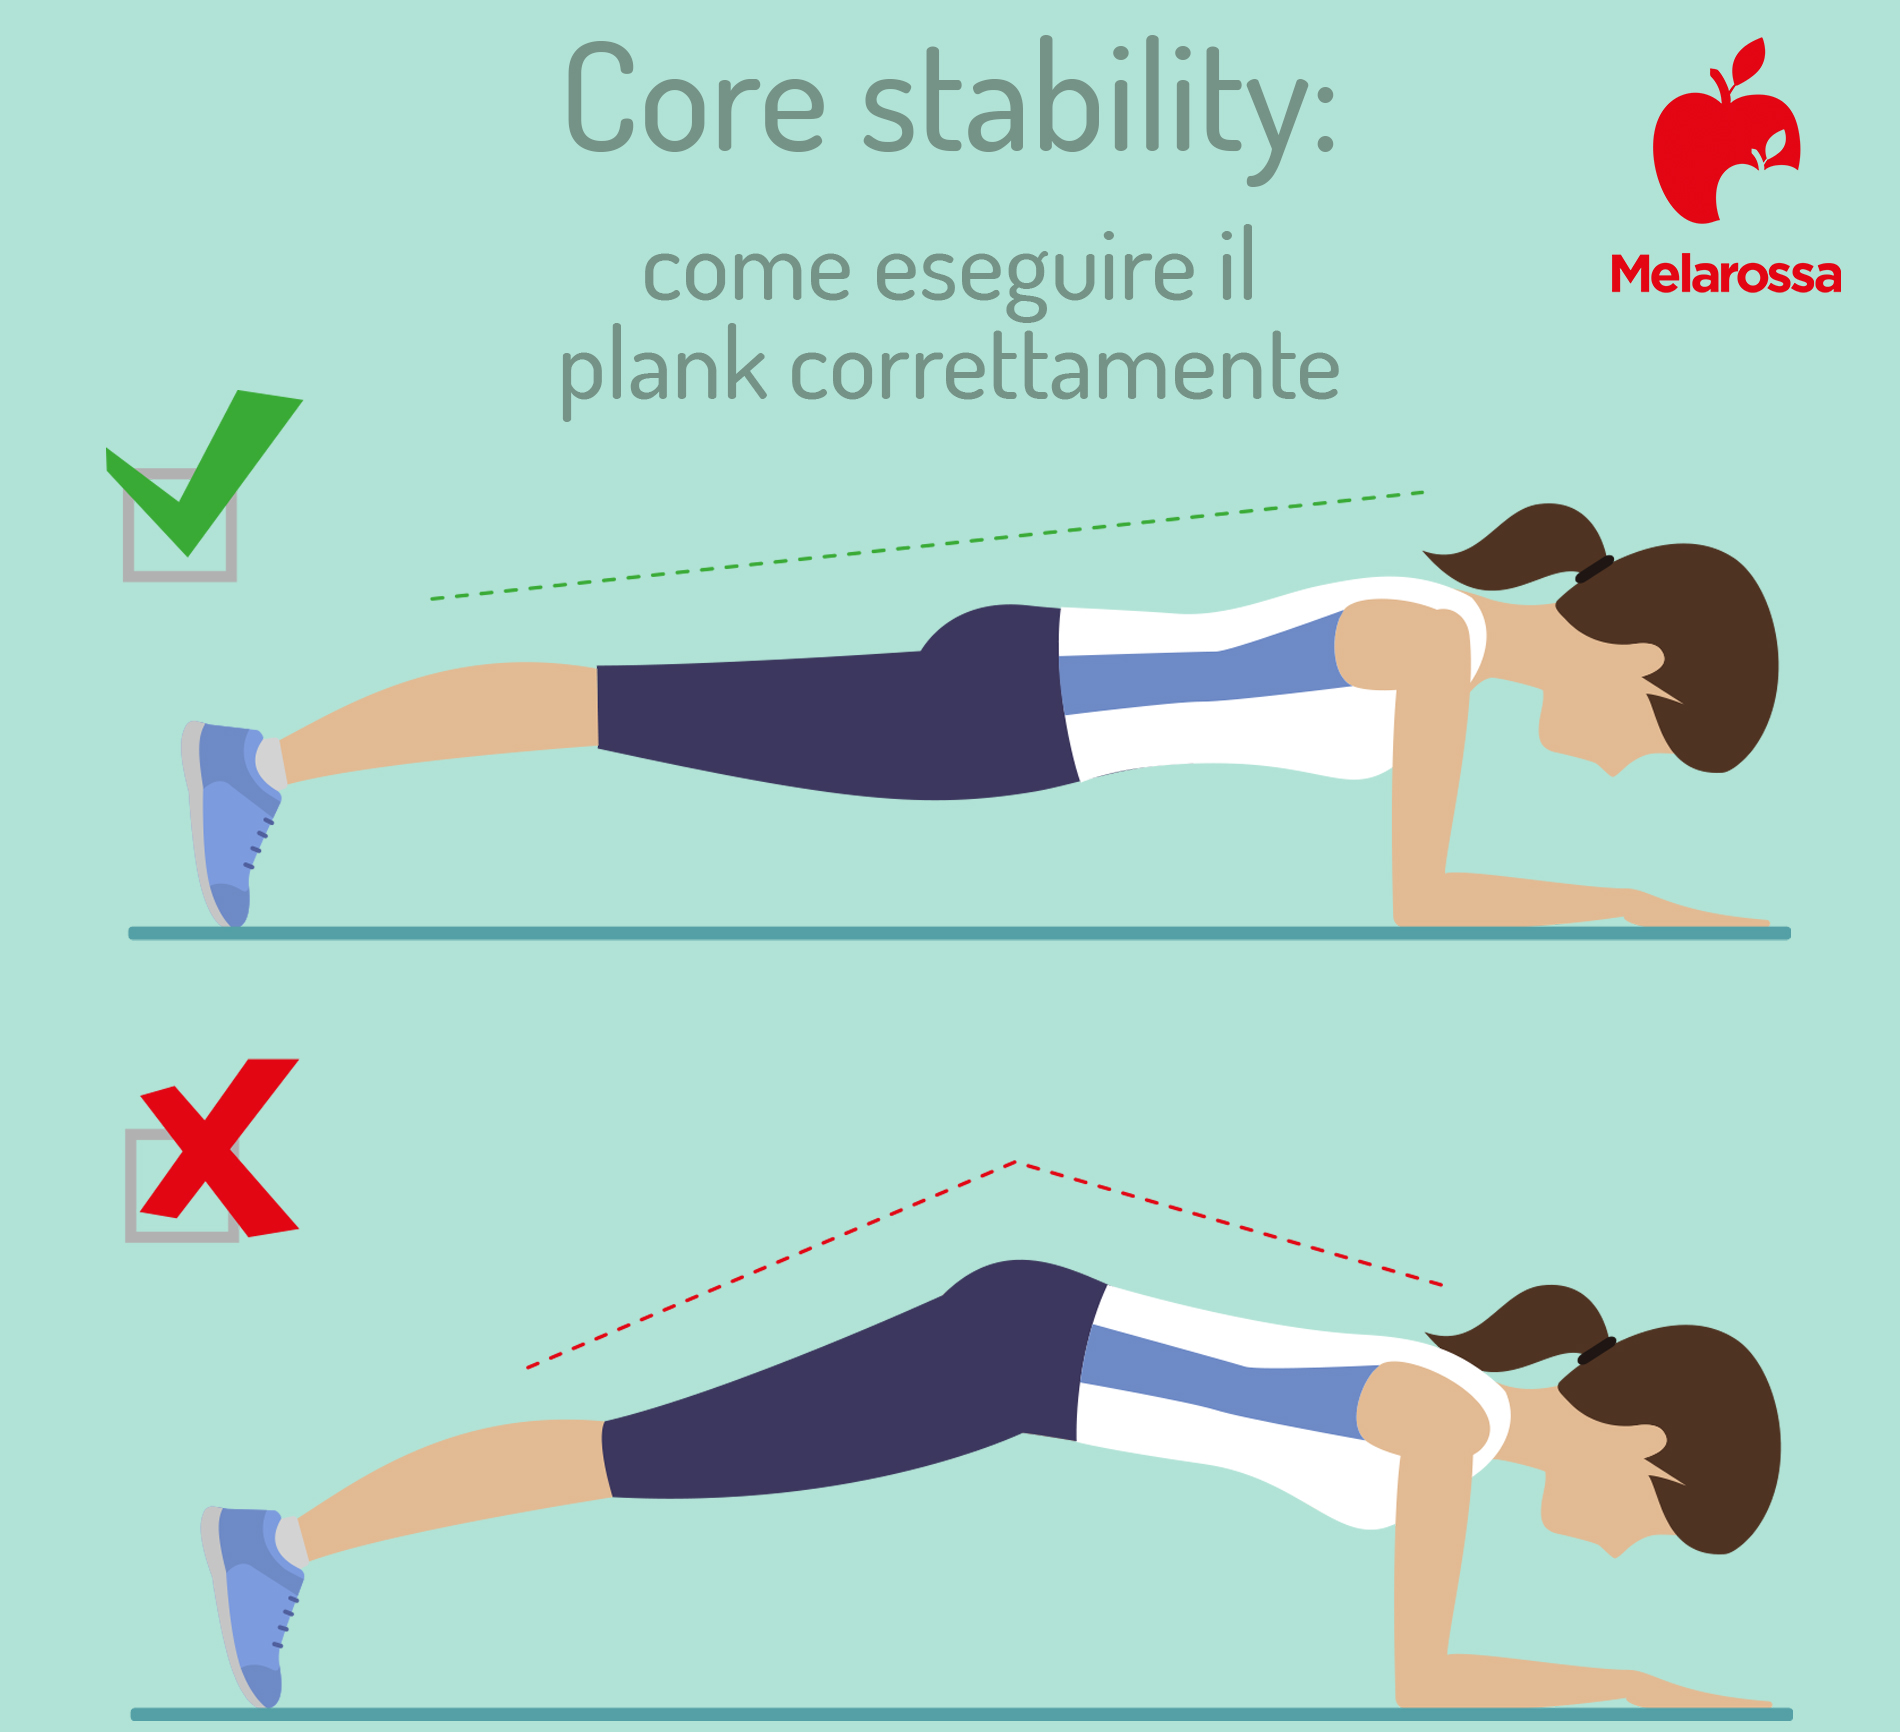 core stability: com eseguire correttamente il plank